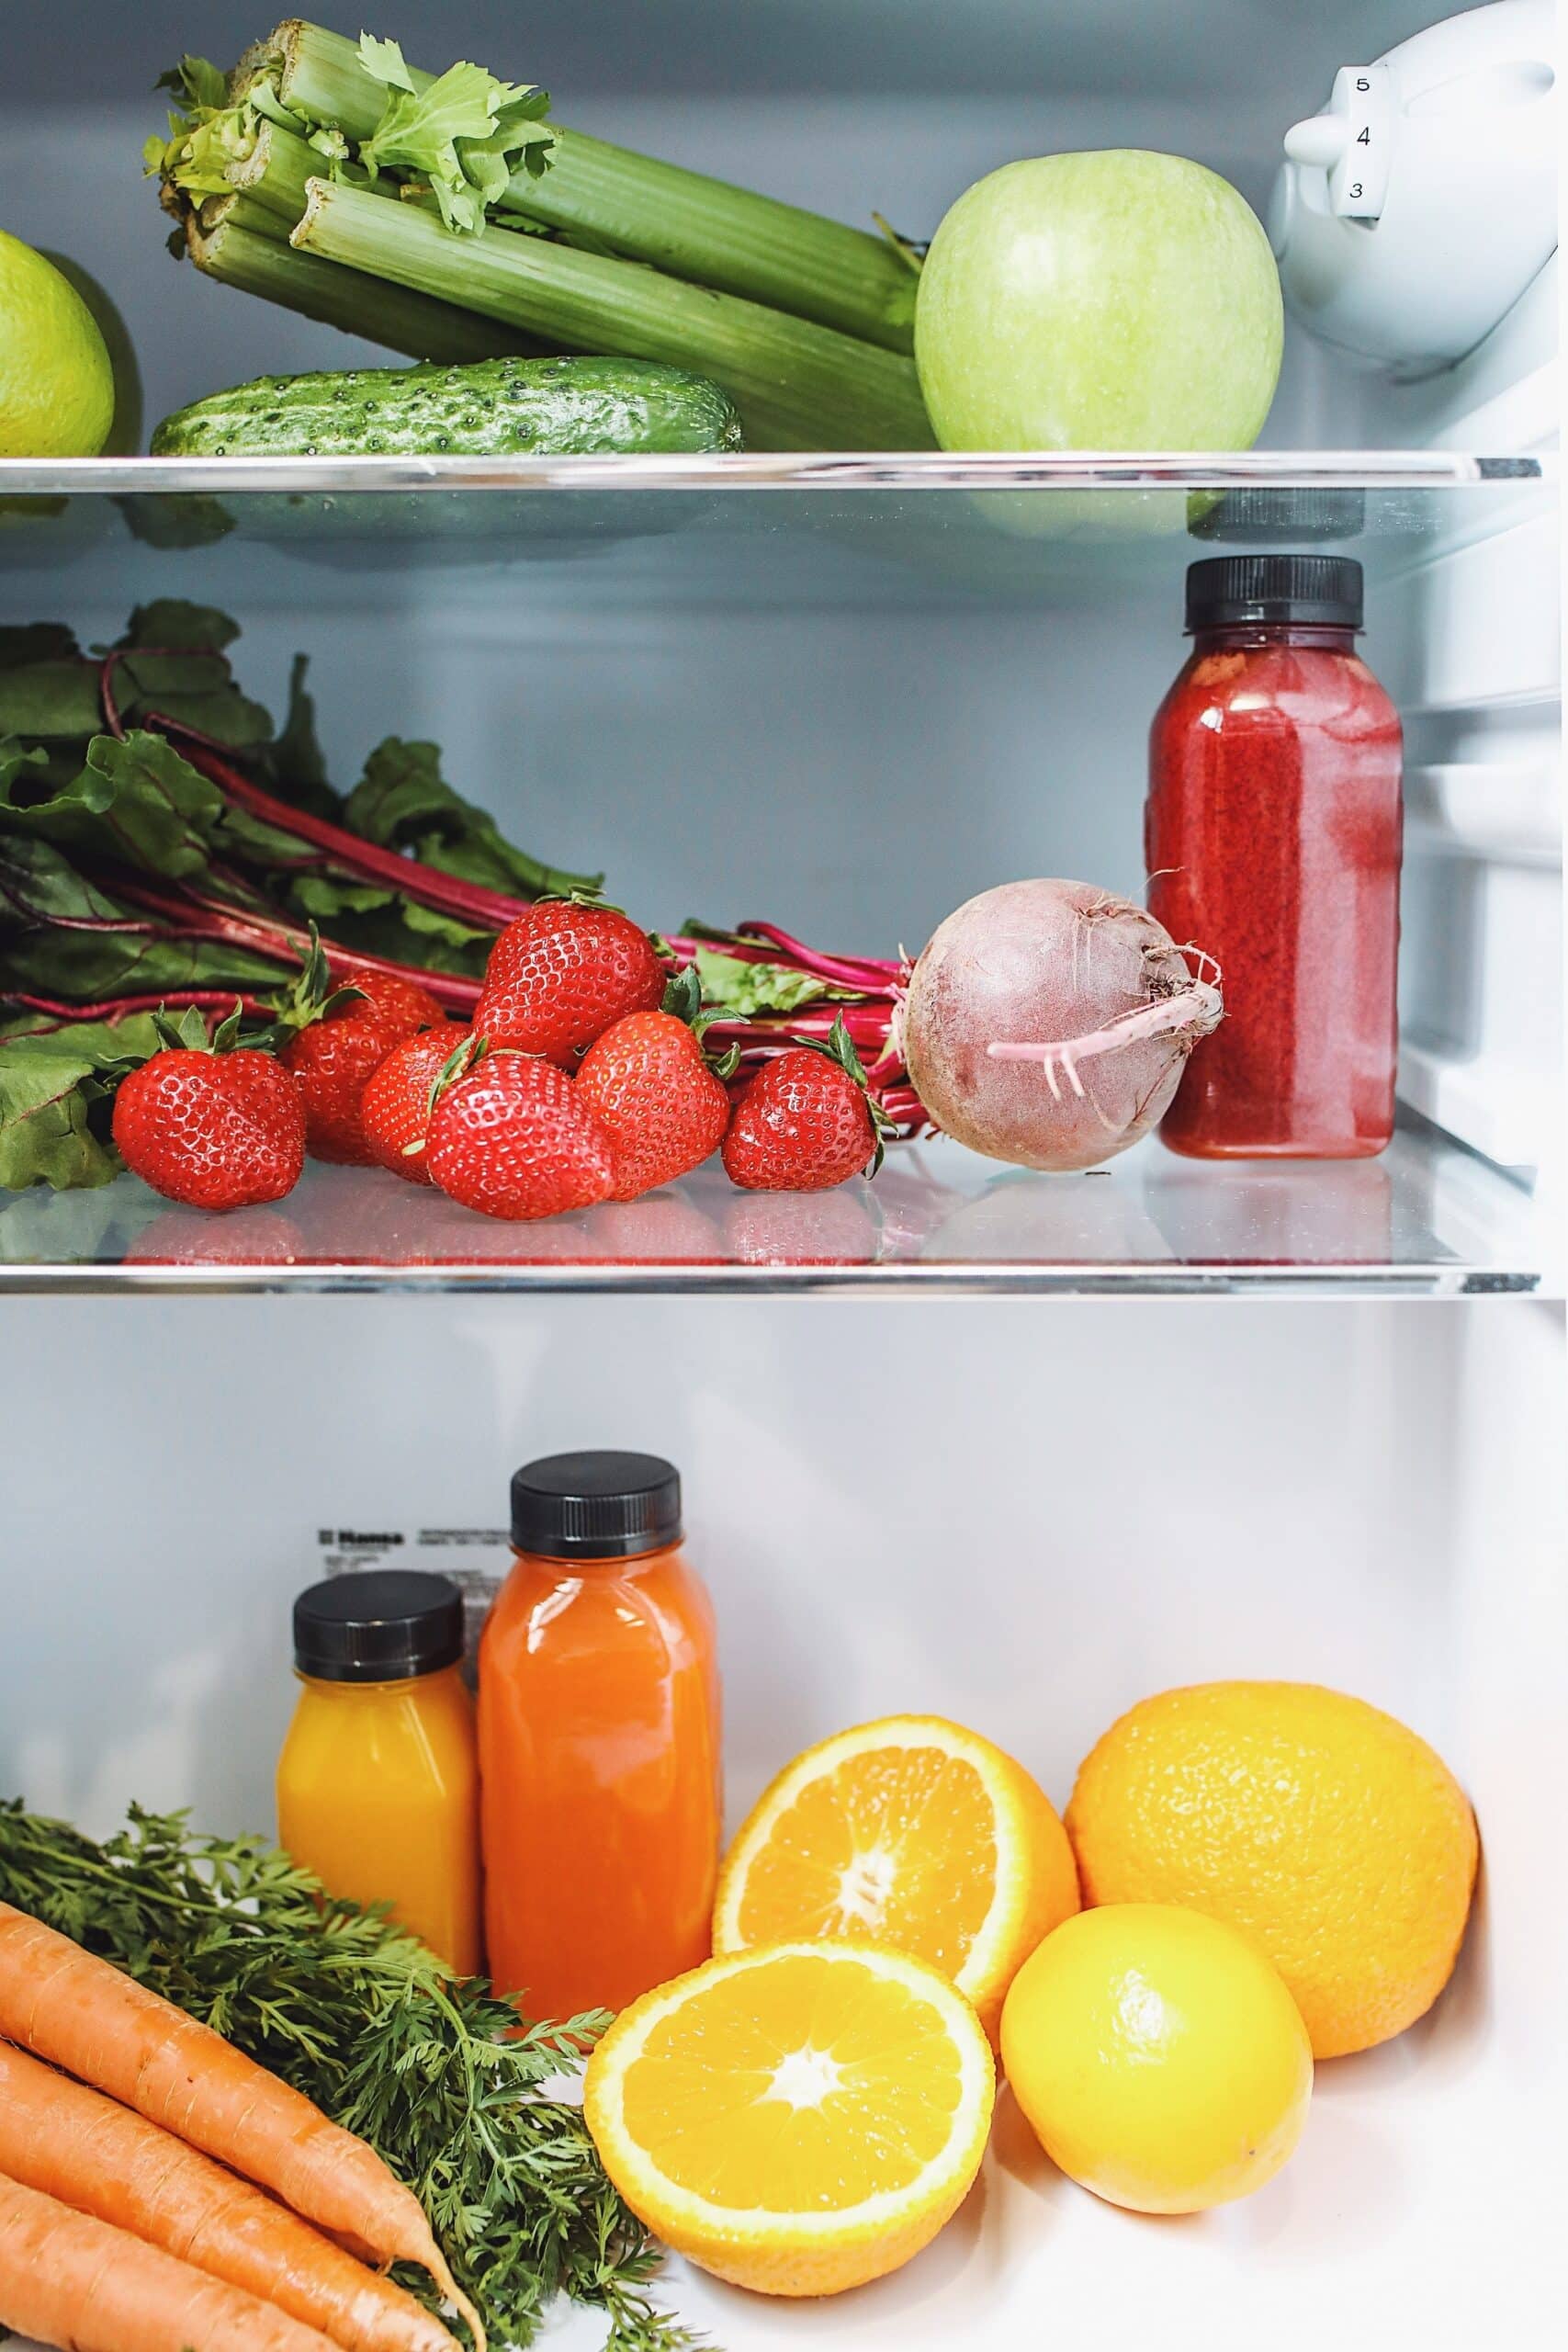 How to orgainize your refrigerator